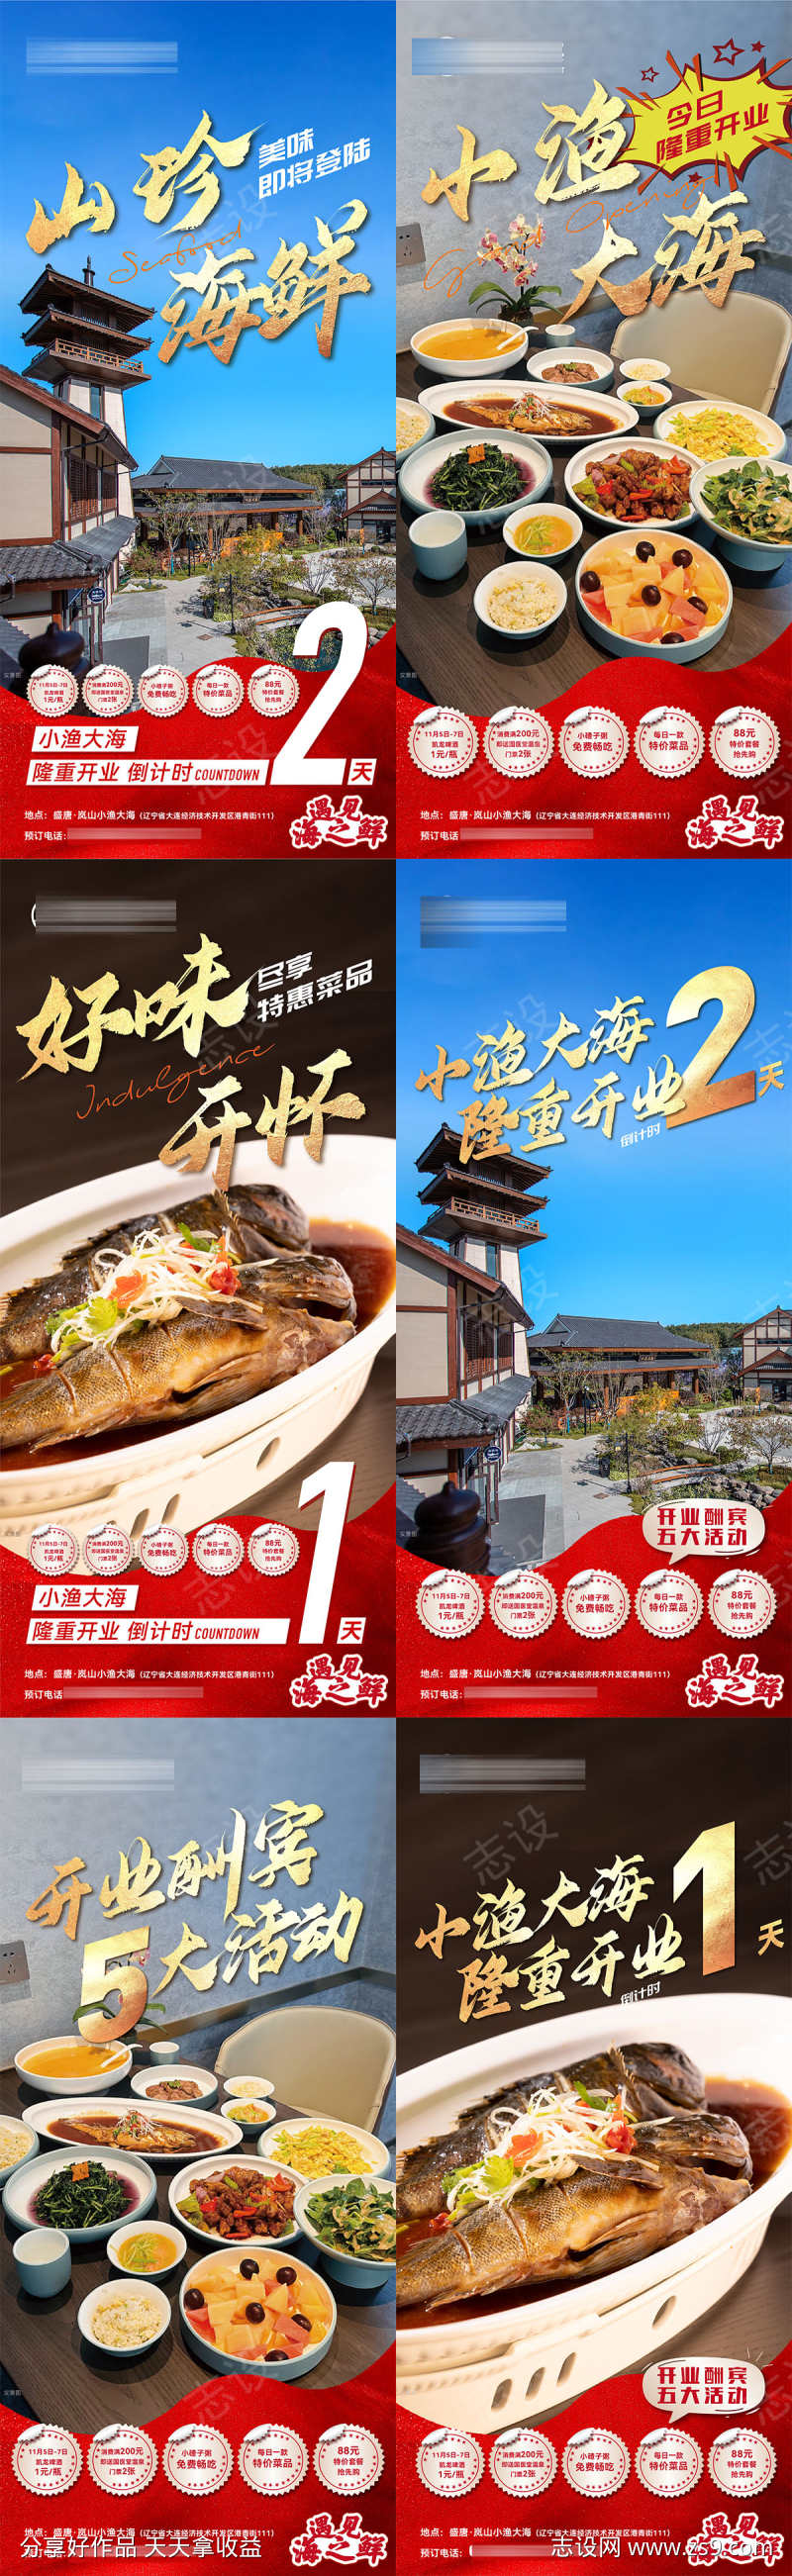 饭店开业海鲜美味菜品优惠酬宾微信海报